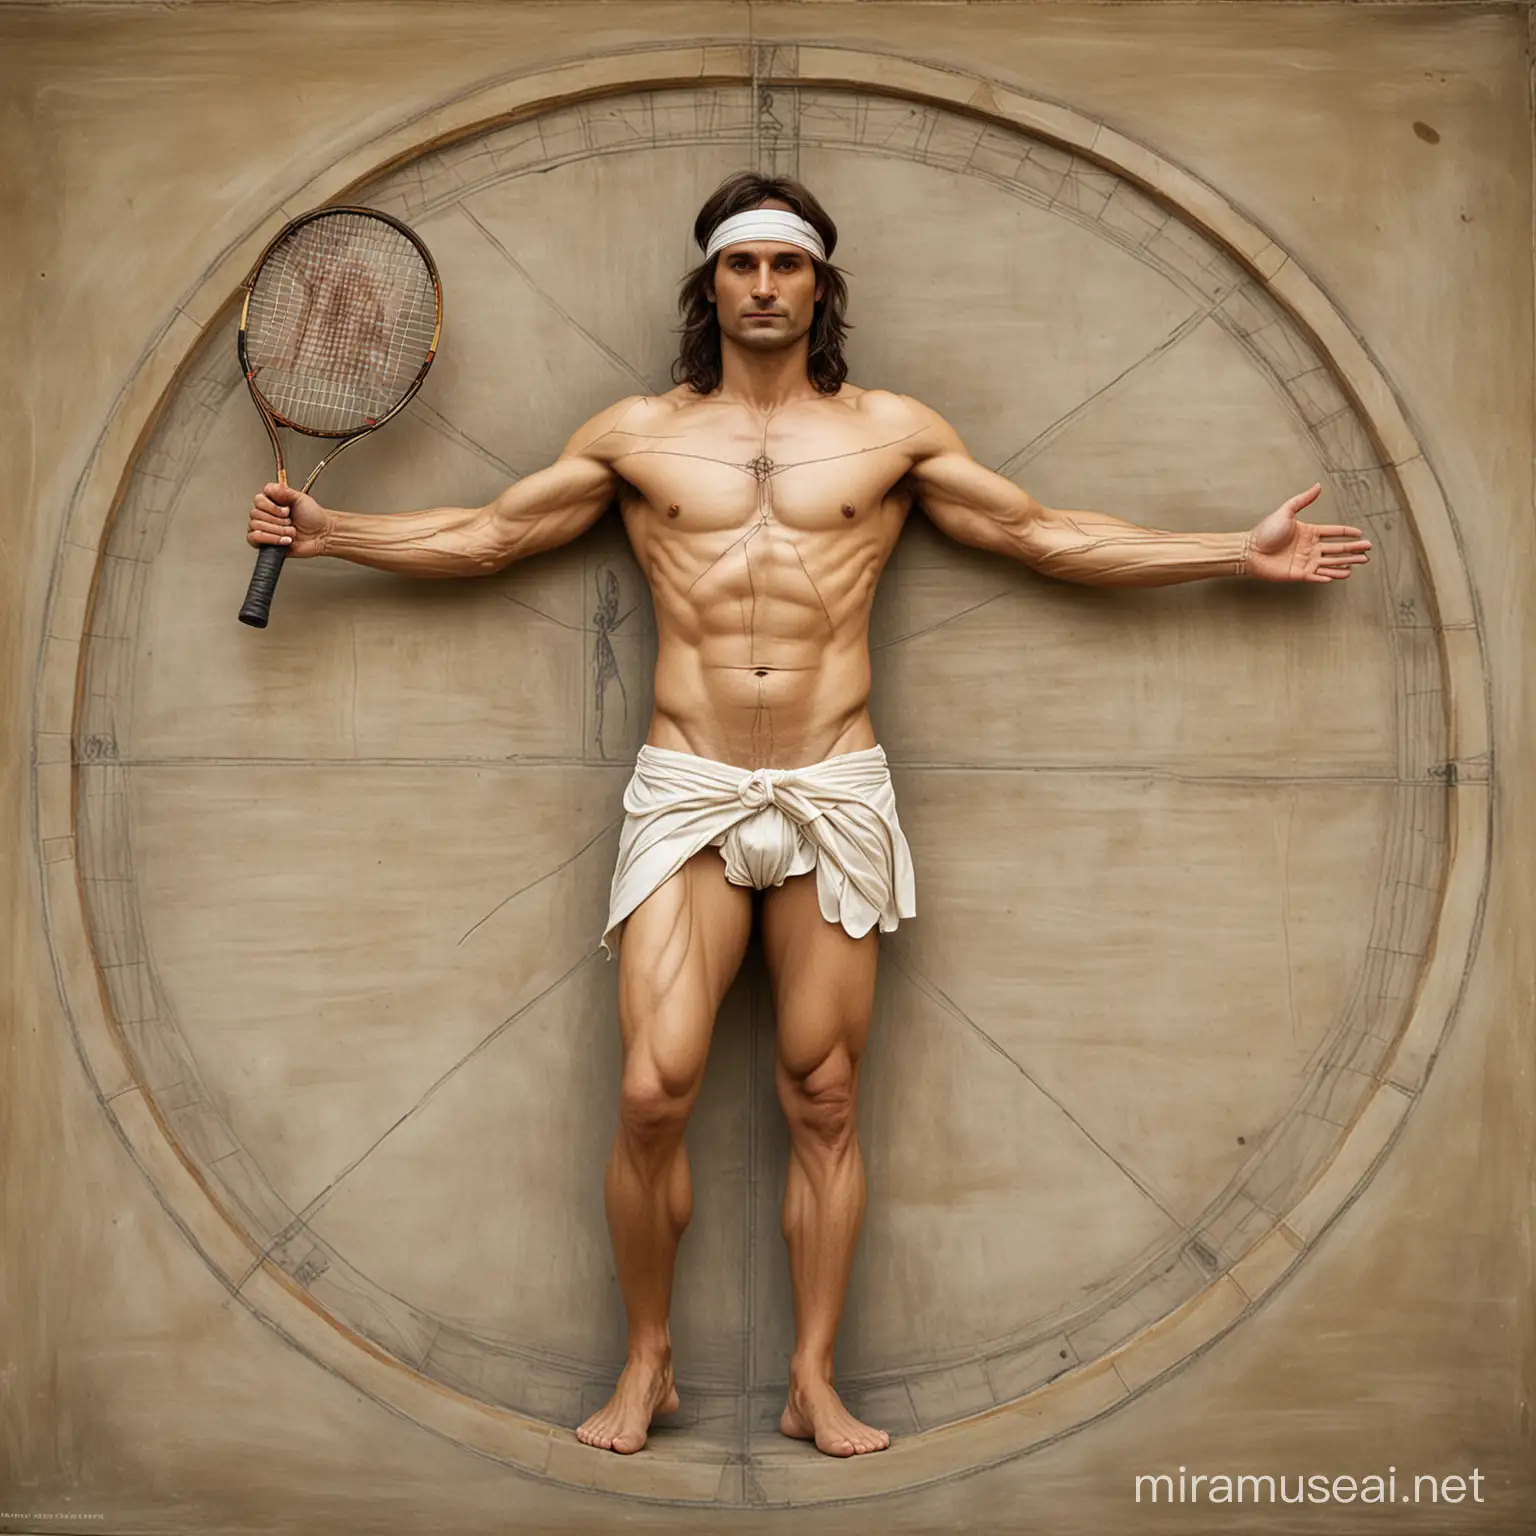 David Ferrer vestido de tenista y representando el hombre de Vitruvio de Leonardo Da Vinci, sujetando una sola raqueta de tenis en la mano. Se observa el cuerpo completo.